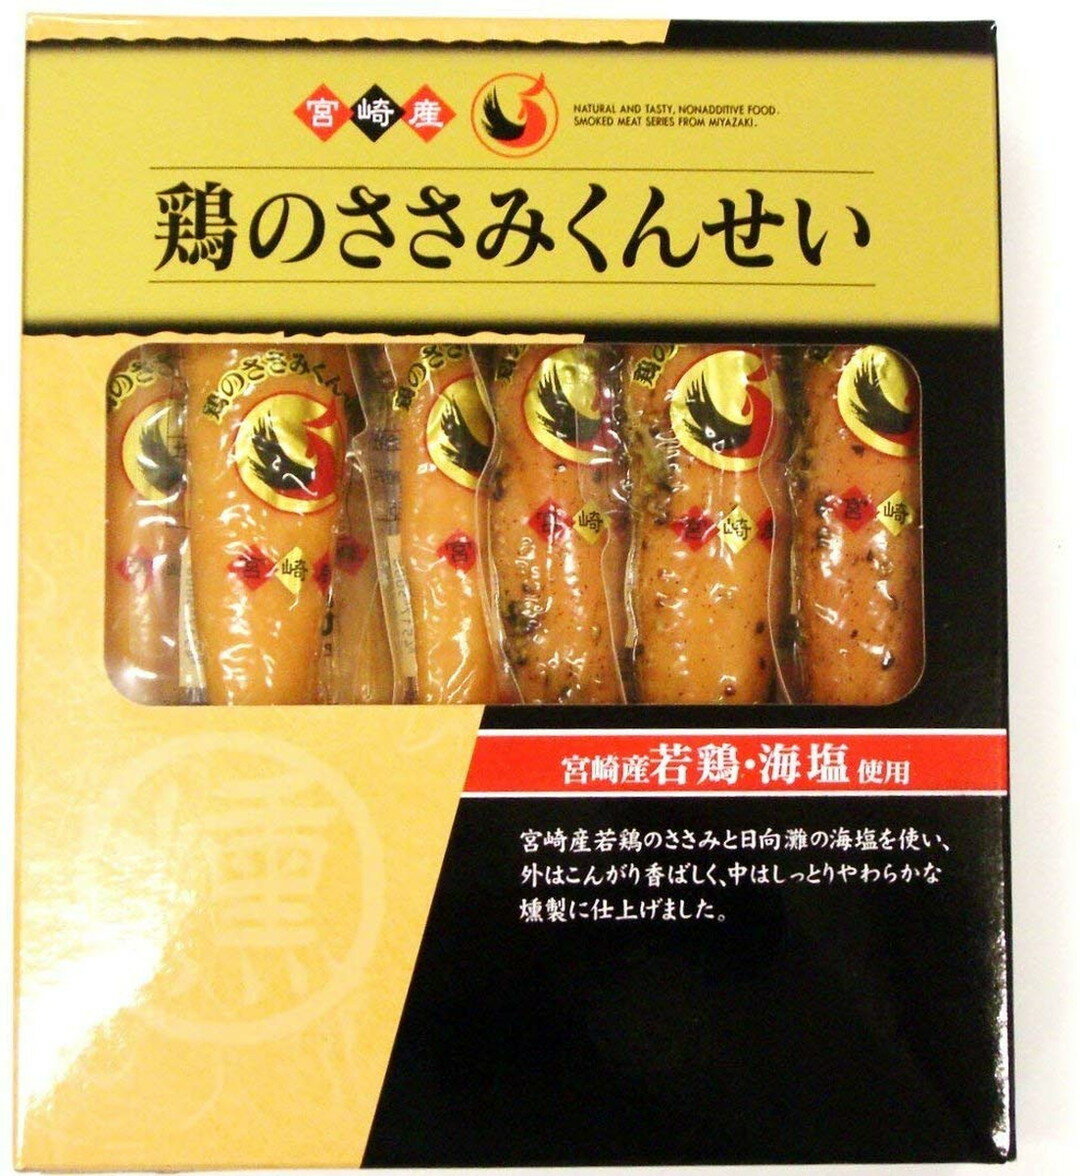 九州 宮崎 鶏肉 燻製 おつまみ 国産 ギフト お土産 雲海物産 鶏のささみくんせい 160g(プレーン20g×4、黒胡椒味20g×4)×2